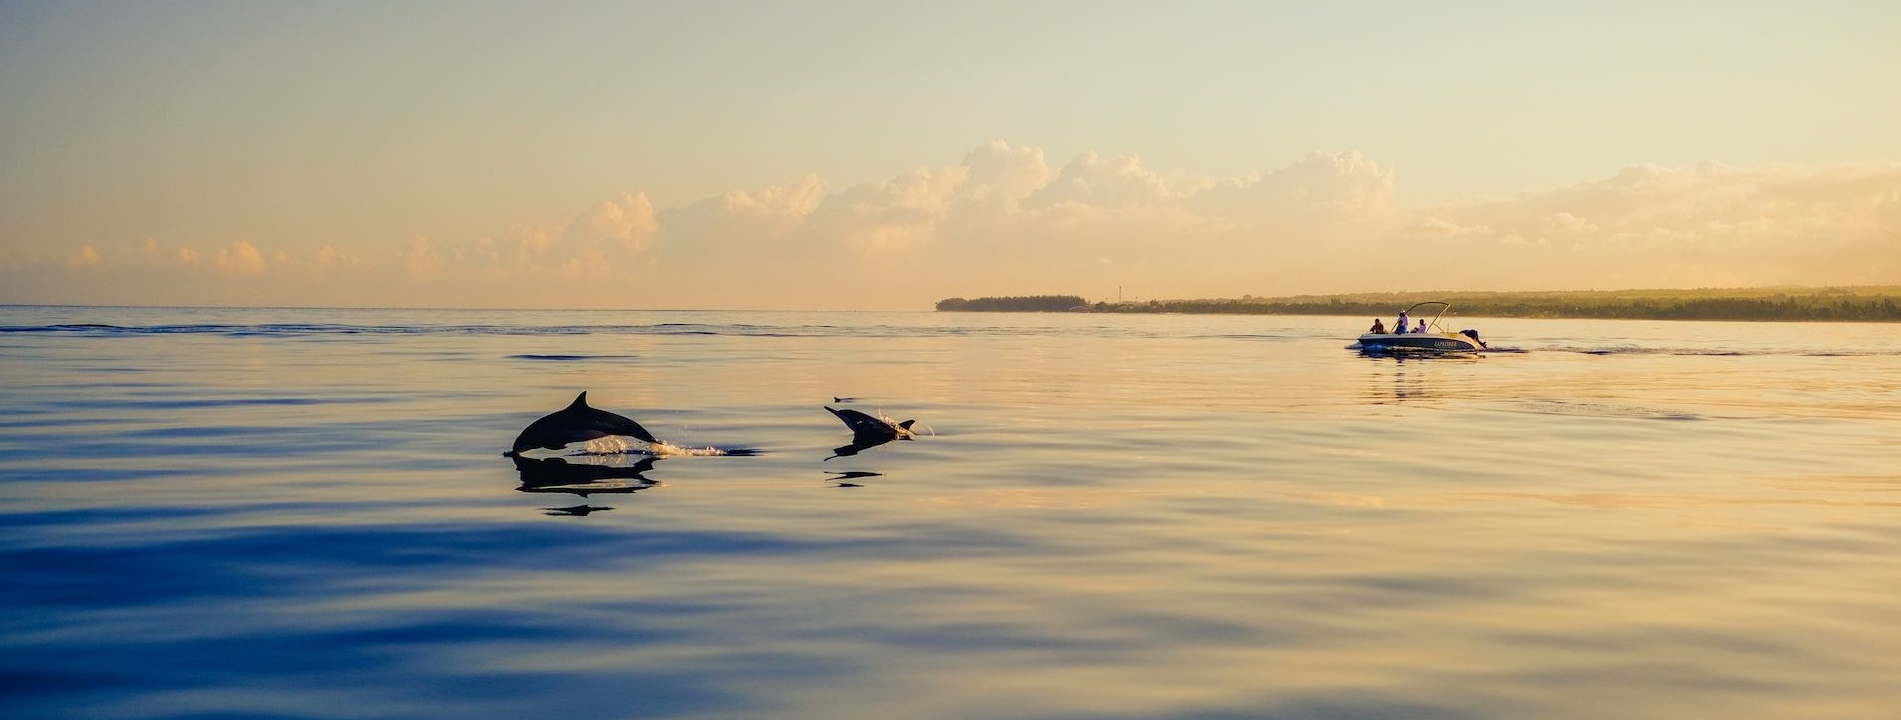 Delfinwatching auf Mauritius